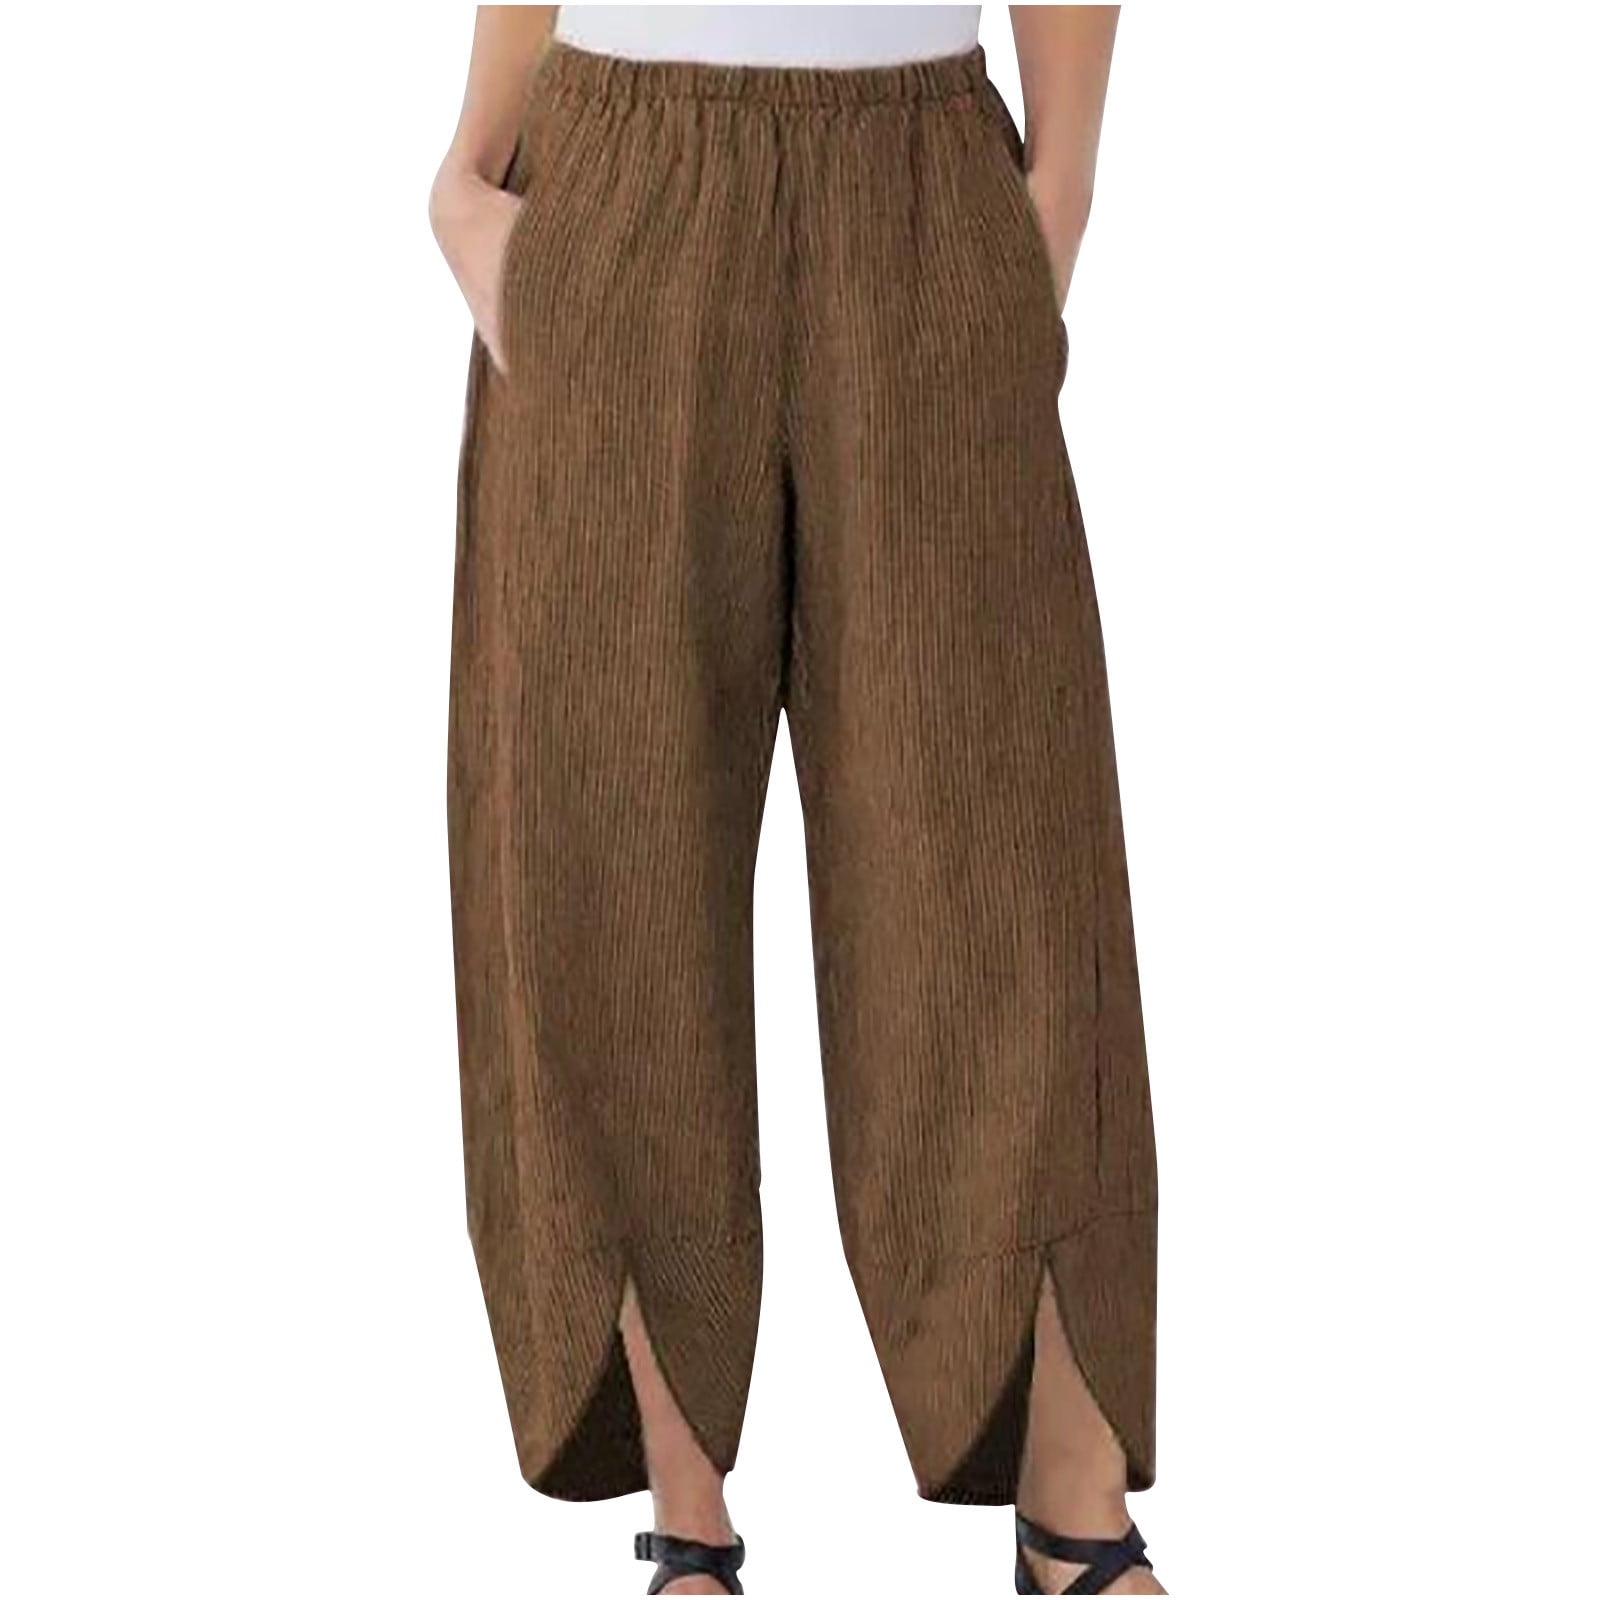 CZHJS Women's Solid Color Crop Pants Clearance Comfy Capris Light